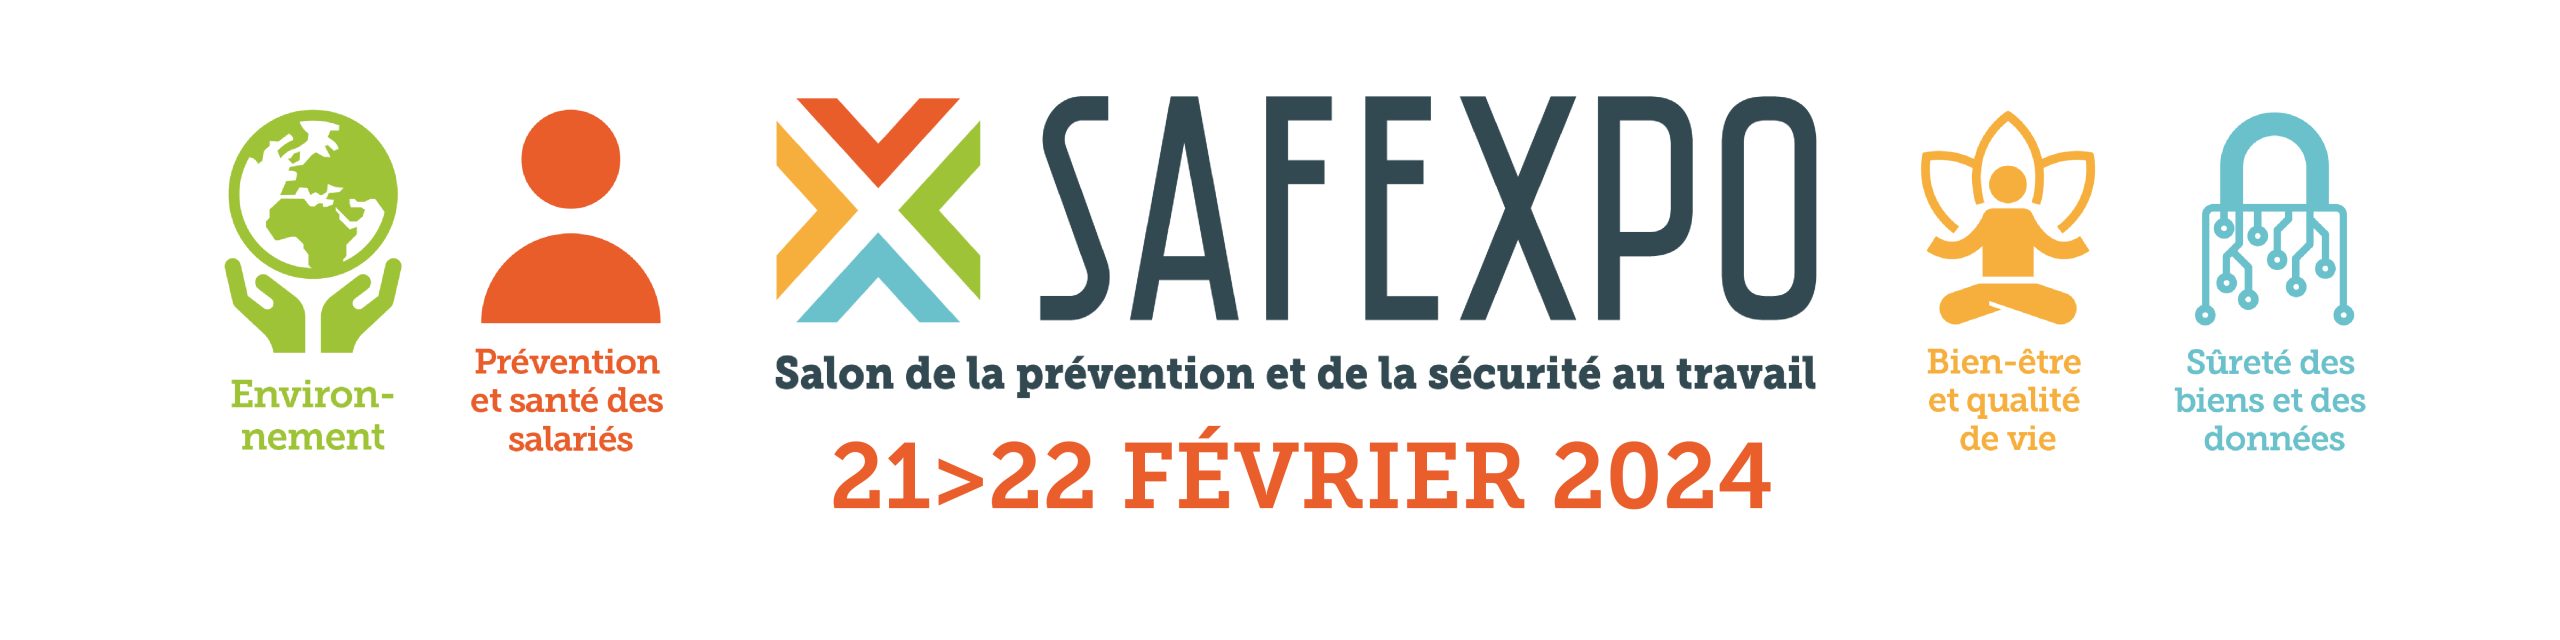 Bannière Safexpo